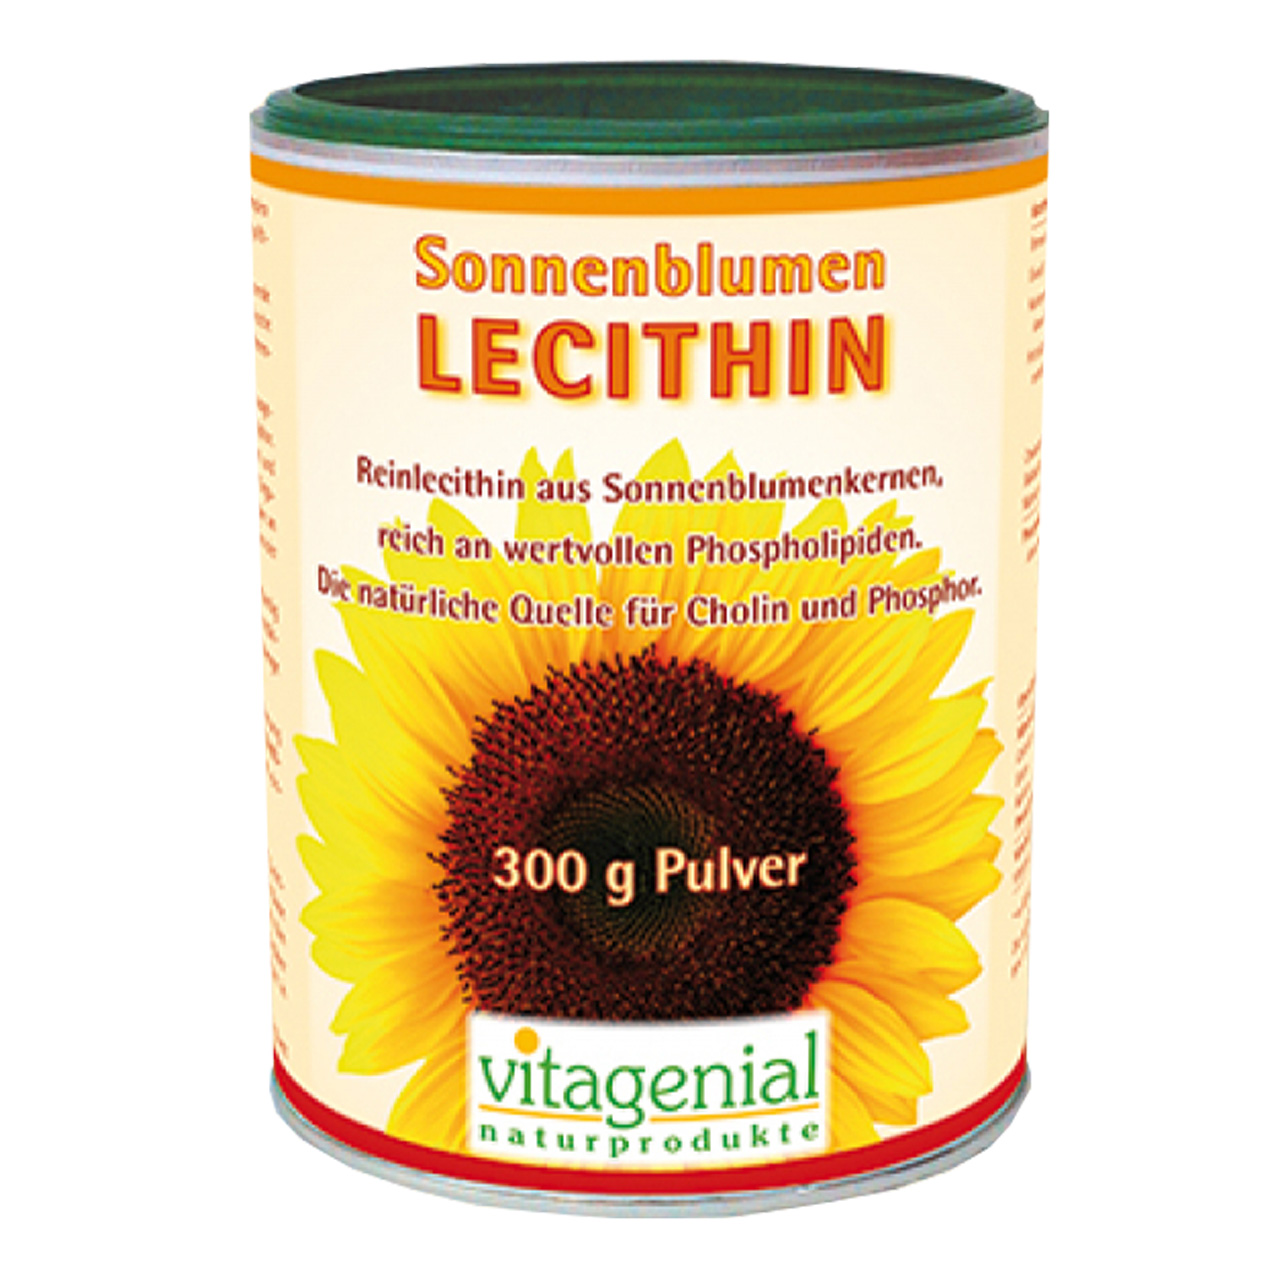 Vitagenial Sonnenblumen Lecithin als 300 Gramm Pulver